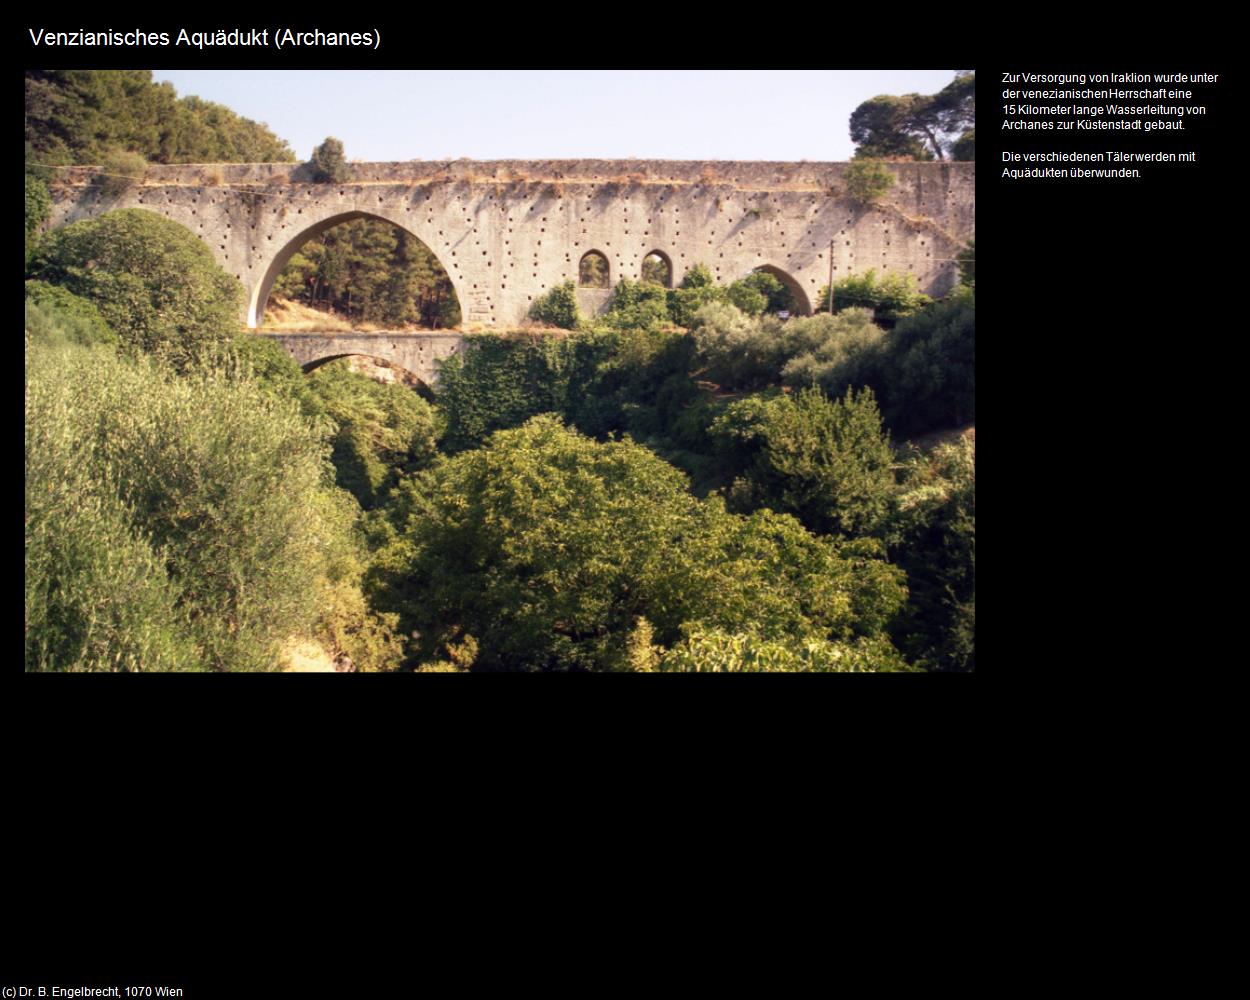 Venzianisches Aquädukt (Archanes) in KRETA und SANTORIN